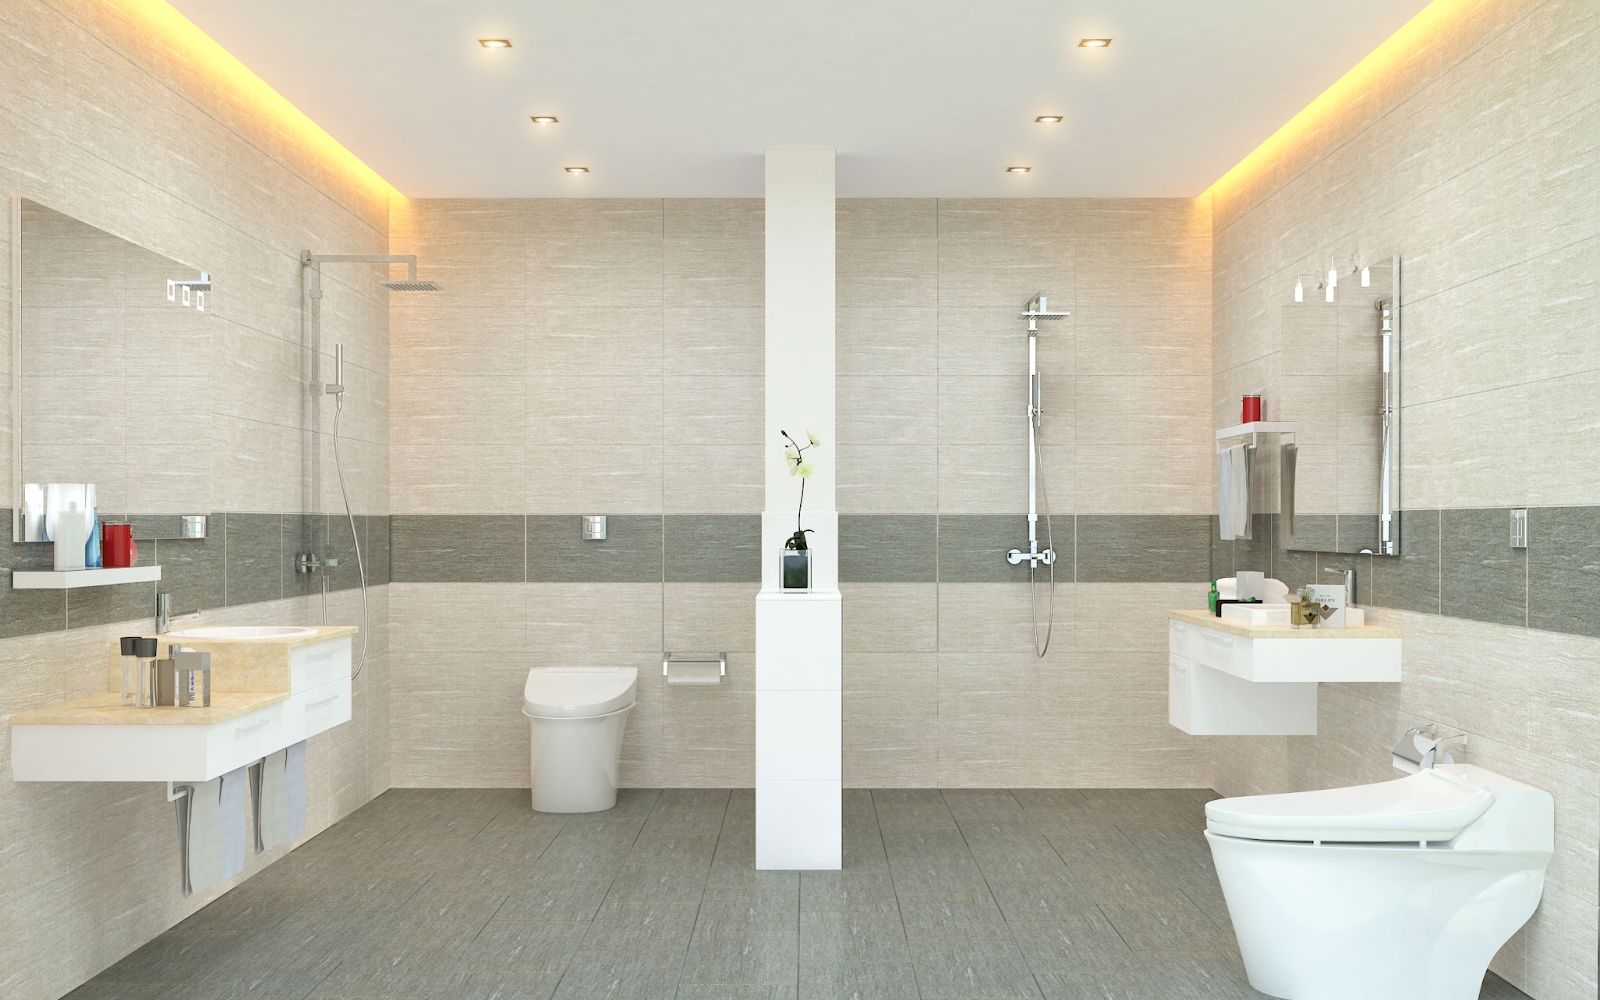 Nhà tắm và nhà vệ sinh nên ốp gạch tường toàn bộ để không bị ẩm mốc